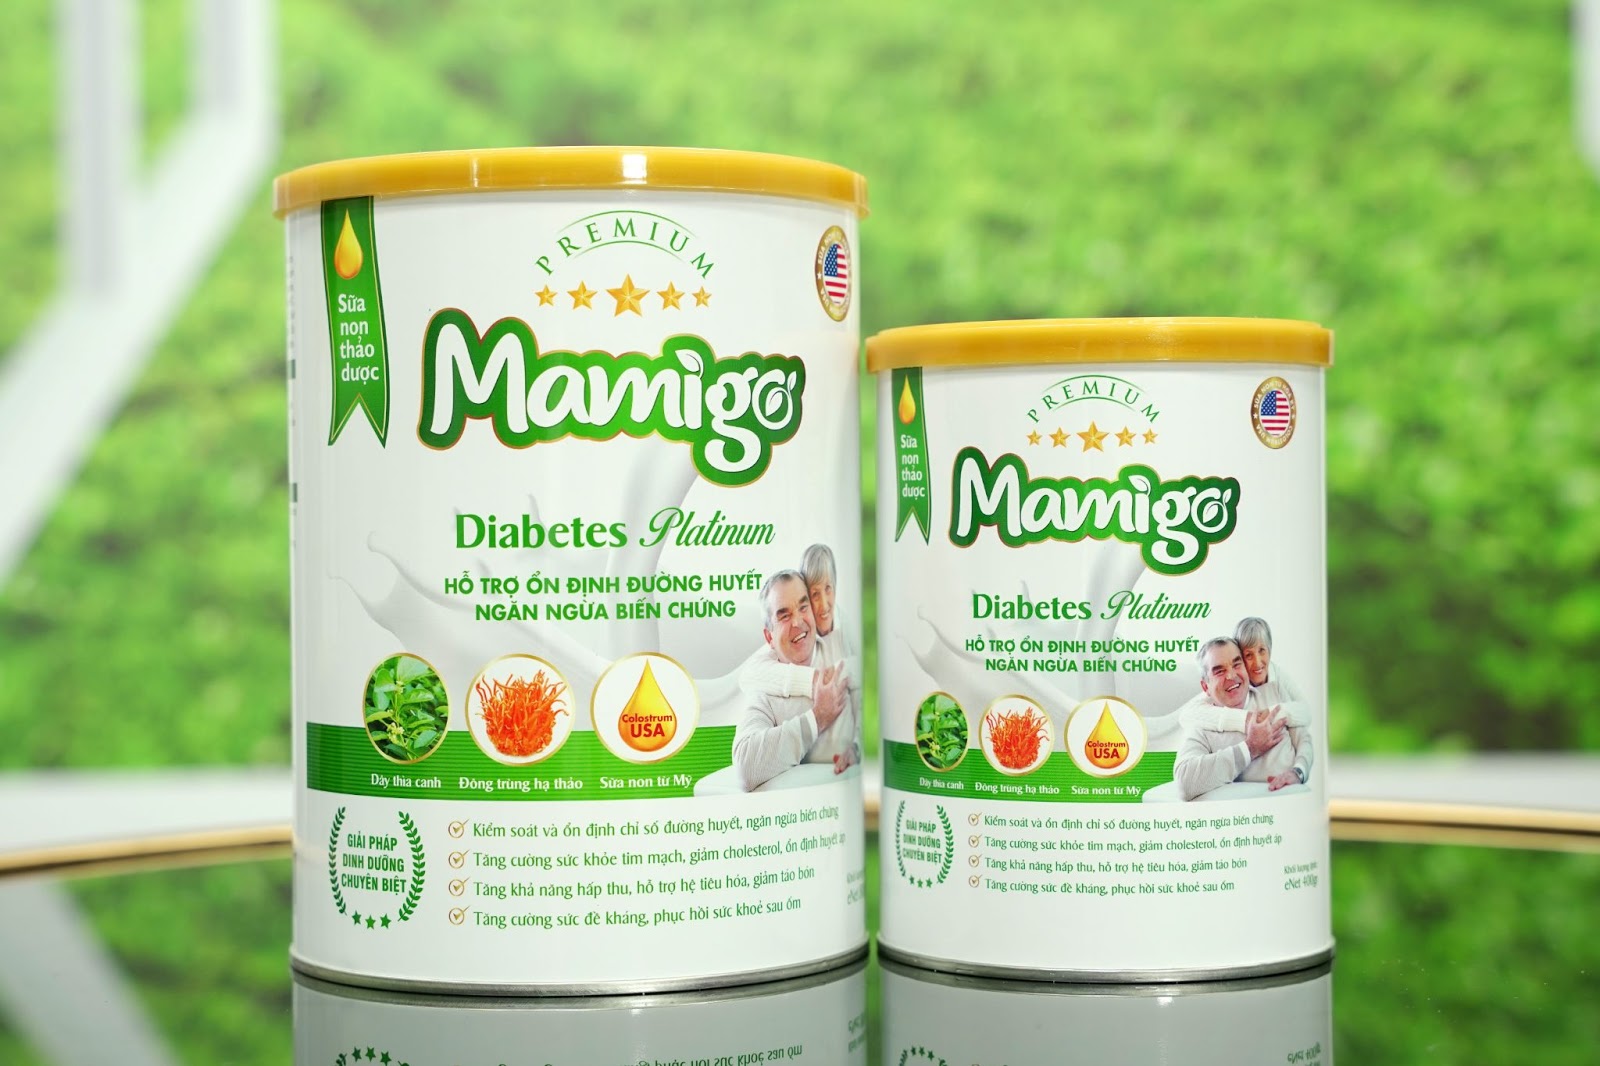 Sữa non thảo dược mamigo: Đột phá công nghệ Nano hướng đích hỗ trợ ổn định đường huyết và phòng ngừa biến chứng hiệu quả